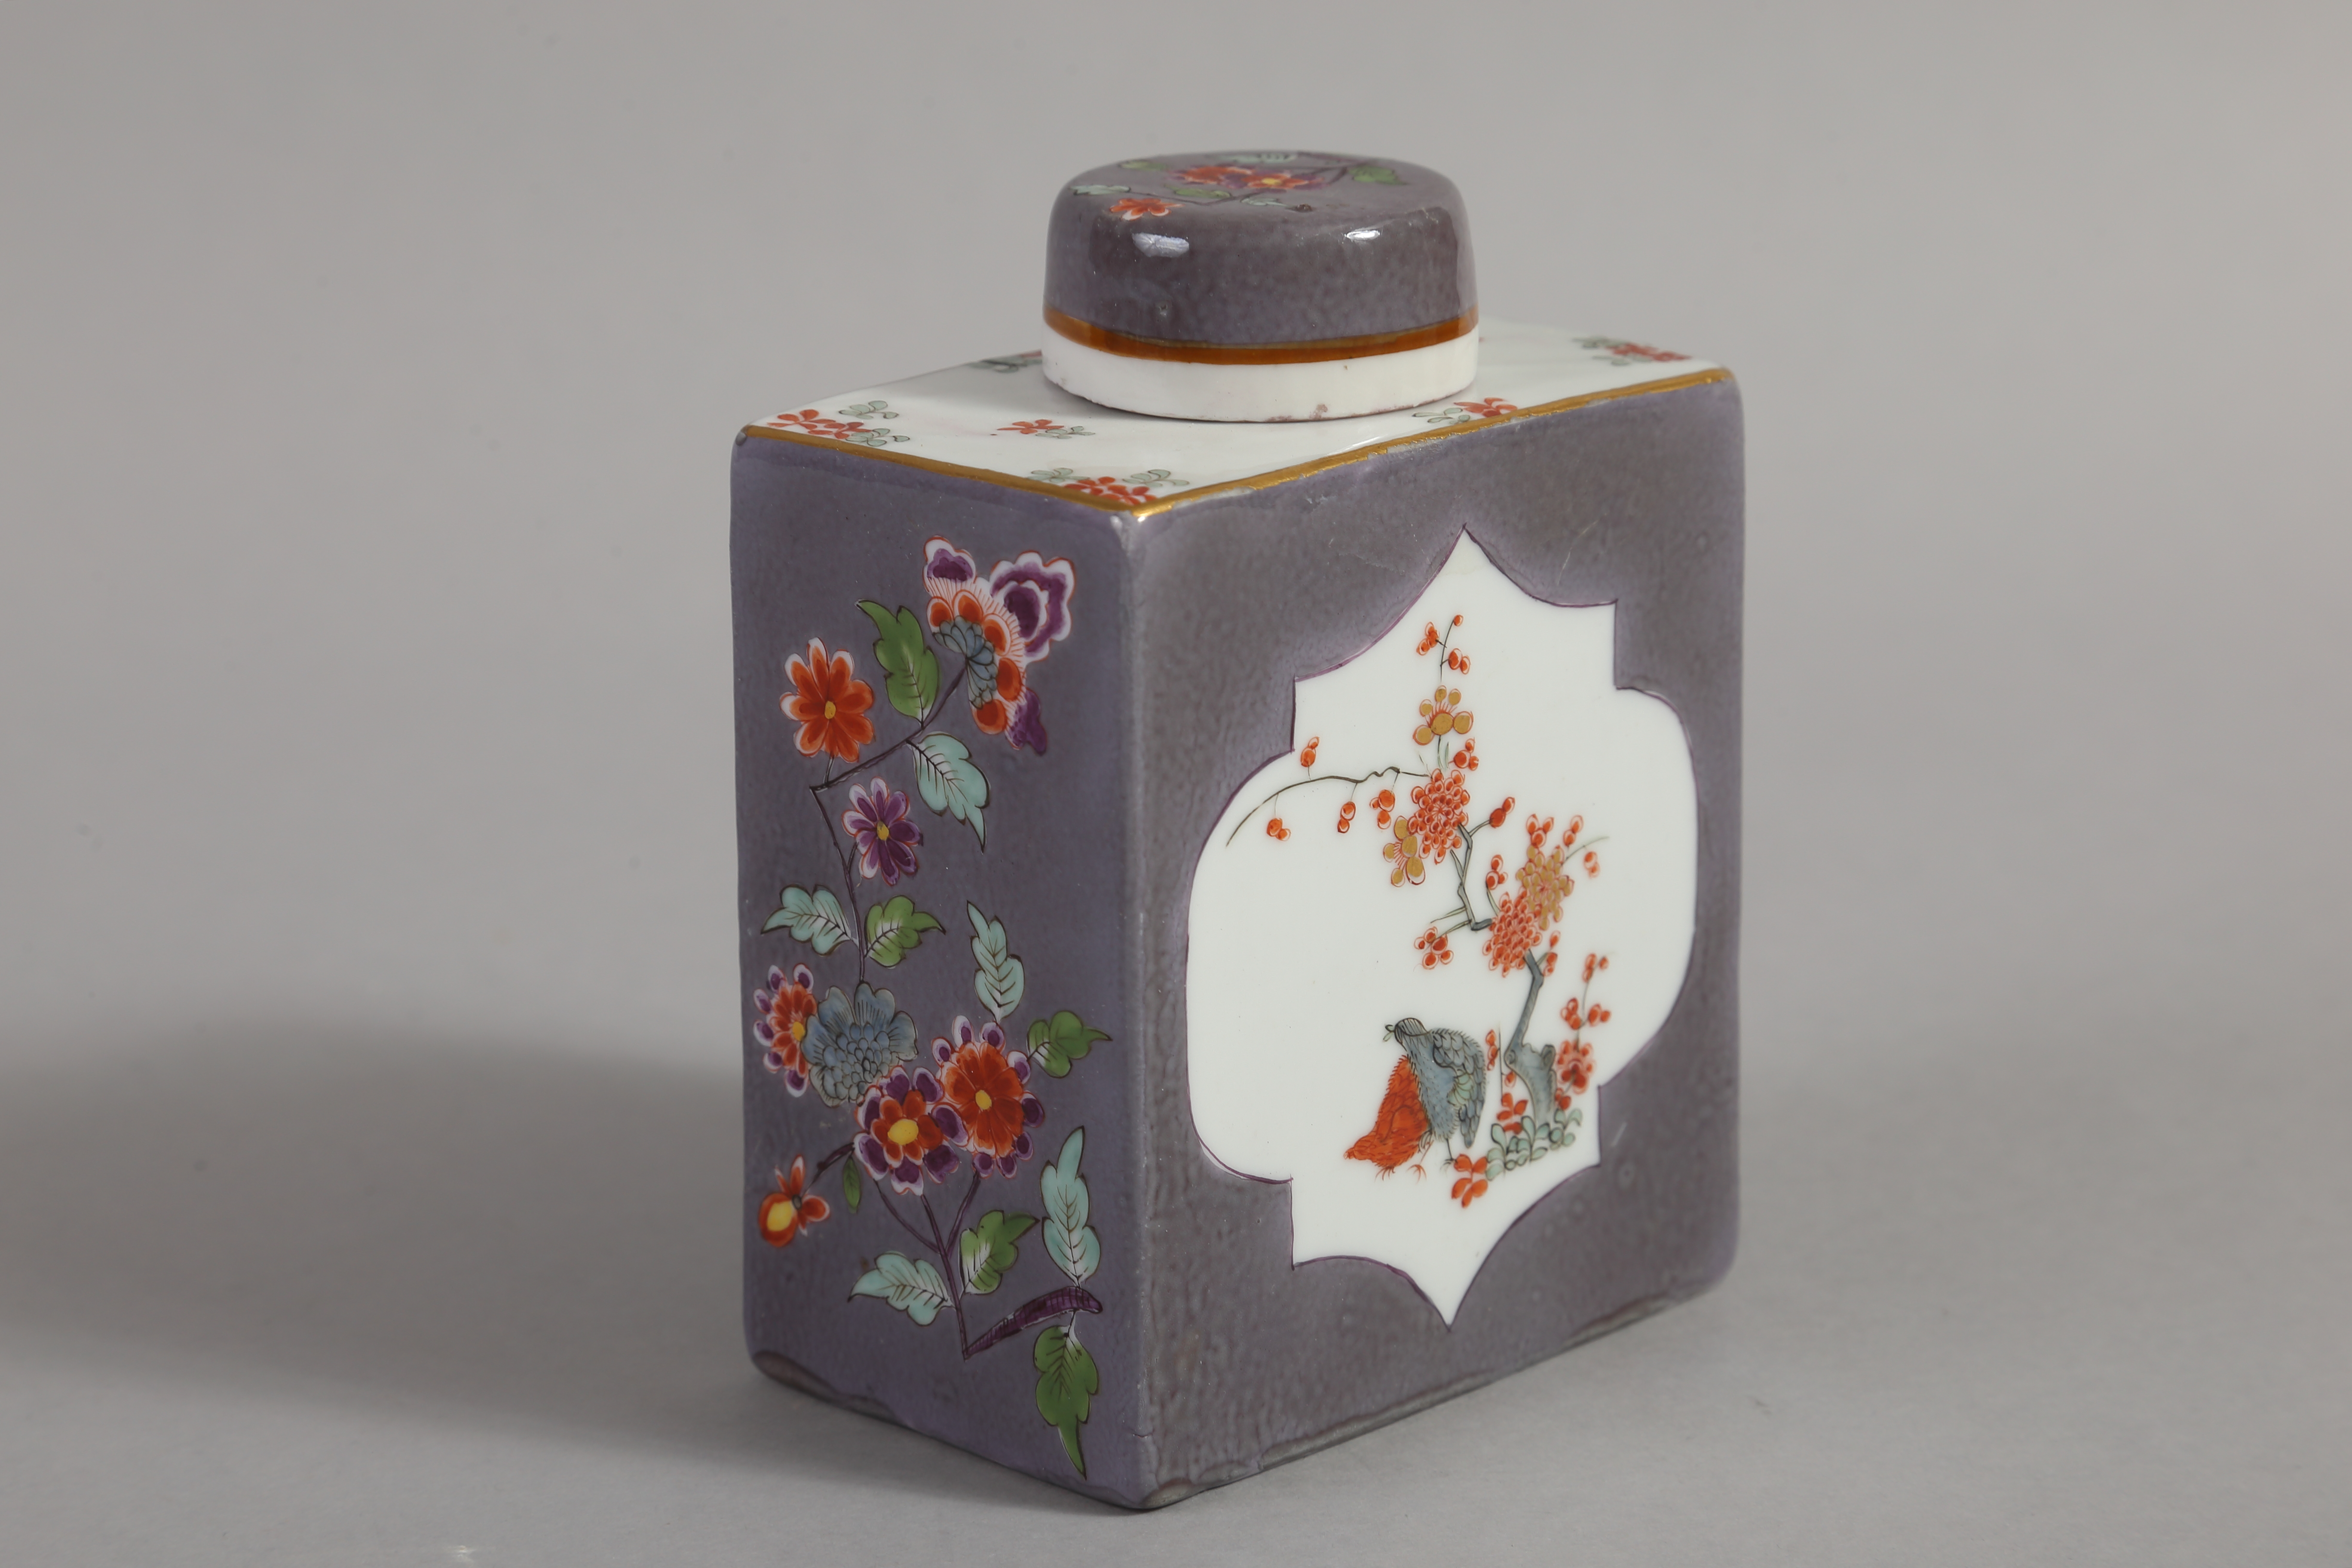 Предметы из чайно-кофейного сервиза с сиреневато-серым крытьём и росписью в стиле какиэмон. Мейсенская фарфоровая мануфактура. 1730-е годы.